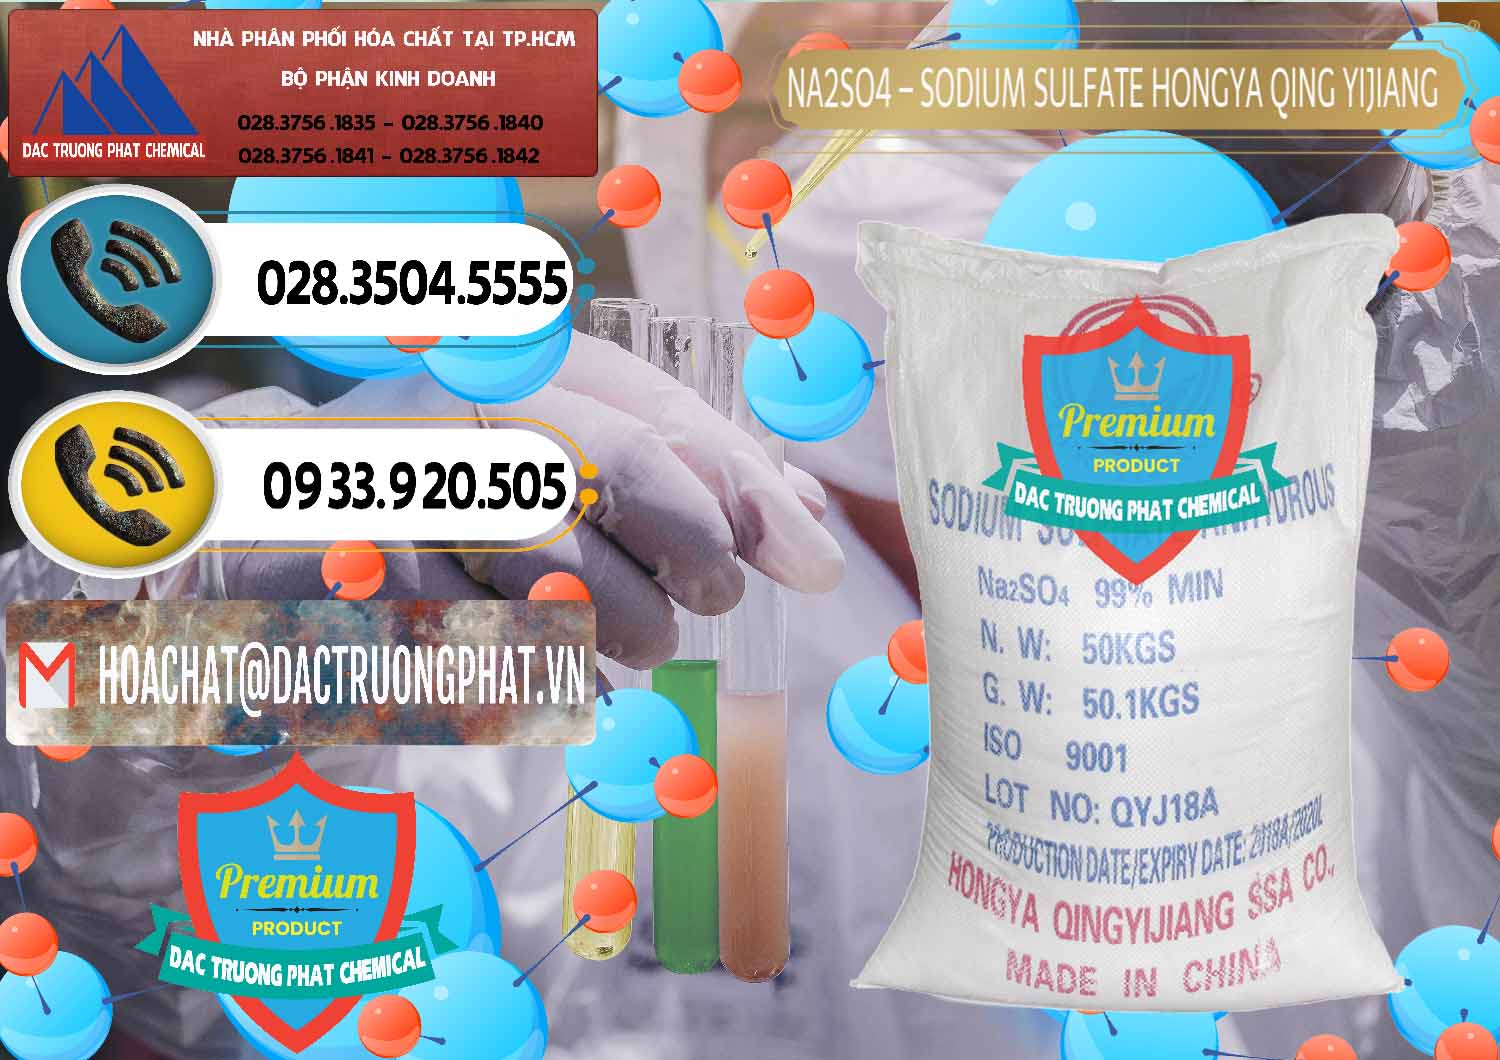 Nơi chuyên kinh doanh & bán Sodium Sulphate - Muối Sunfat Na2SO4 Logo Cánh Bườm Hongya Qing Yi Trung Quốc China - 0098 - Công ty nhập khẩu & phân phối hóa chất tại TP.HCM - hoachatdetnhuom.vn